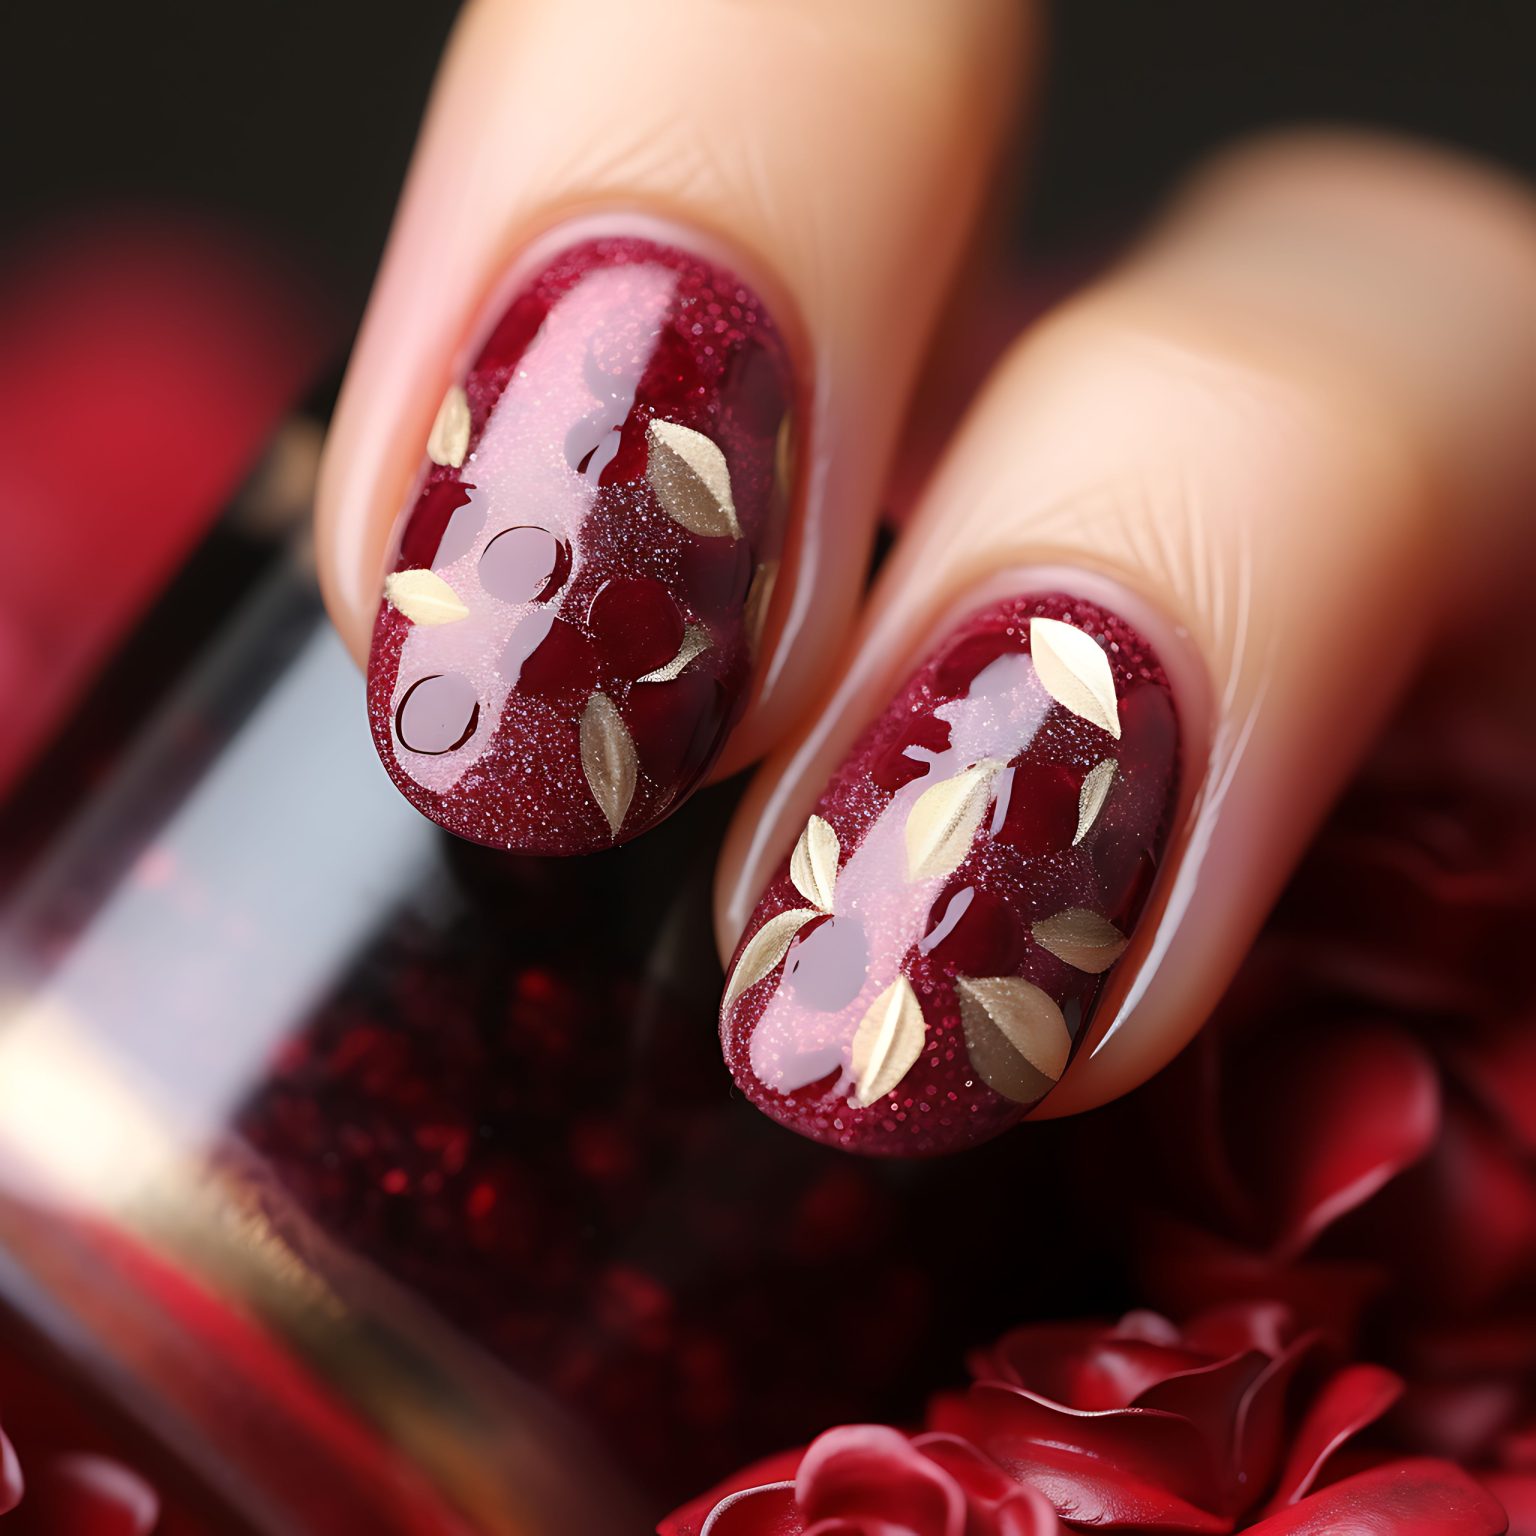 velvet-rose-roseinspired-nails-design-with-velvettextured-concept-idea-creative-art-photoshoot-1536x1536